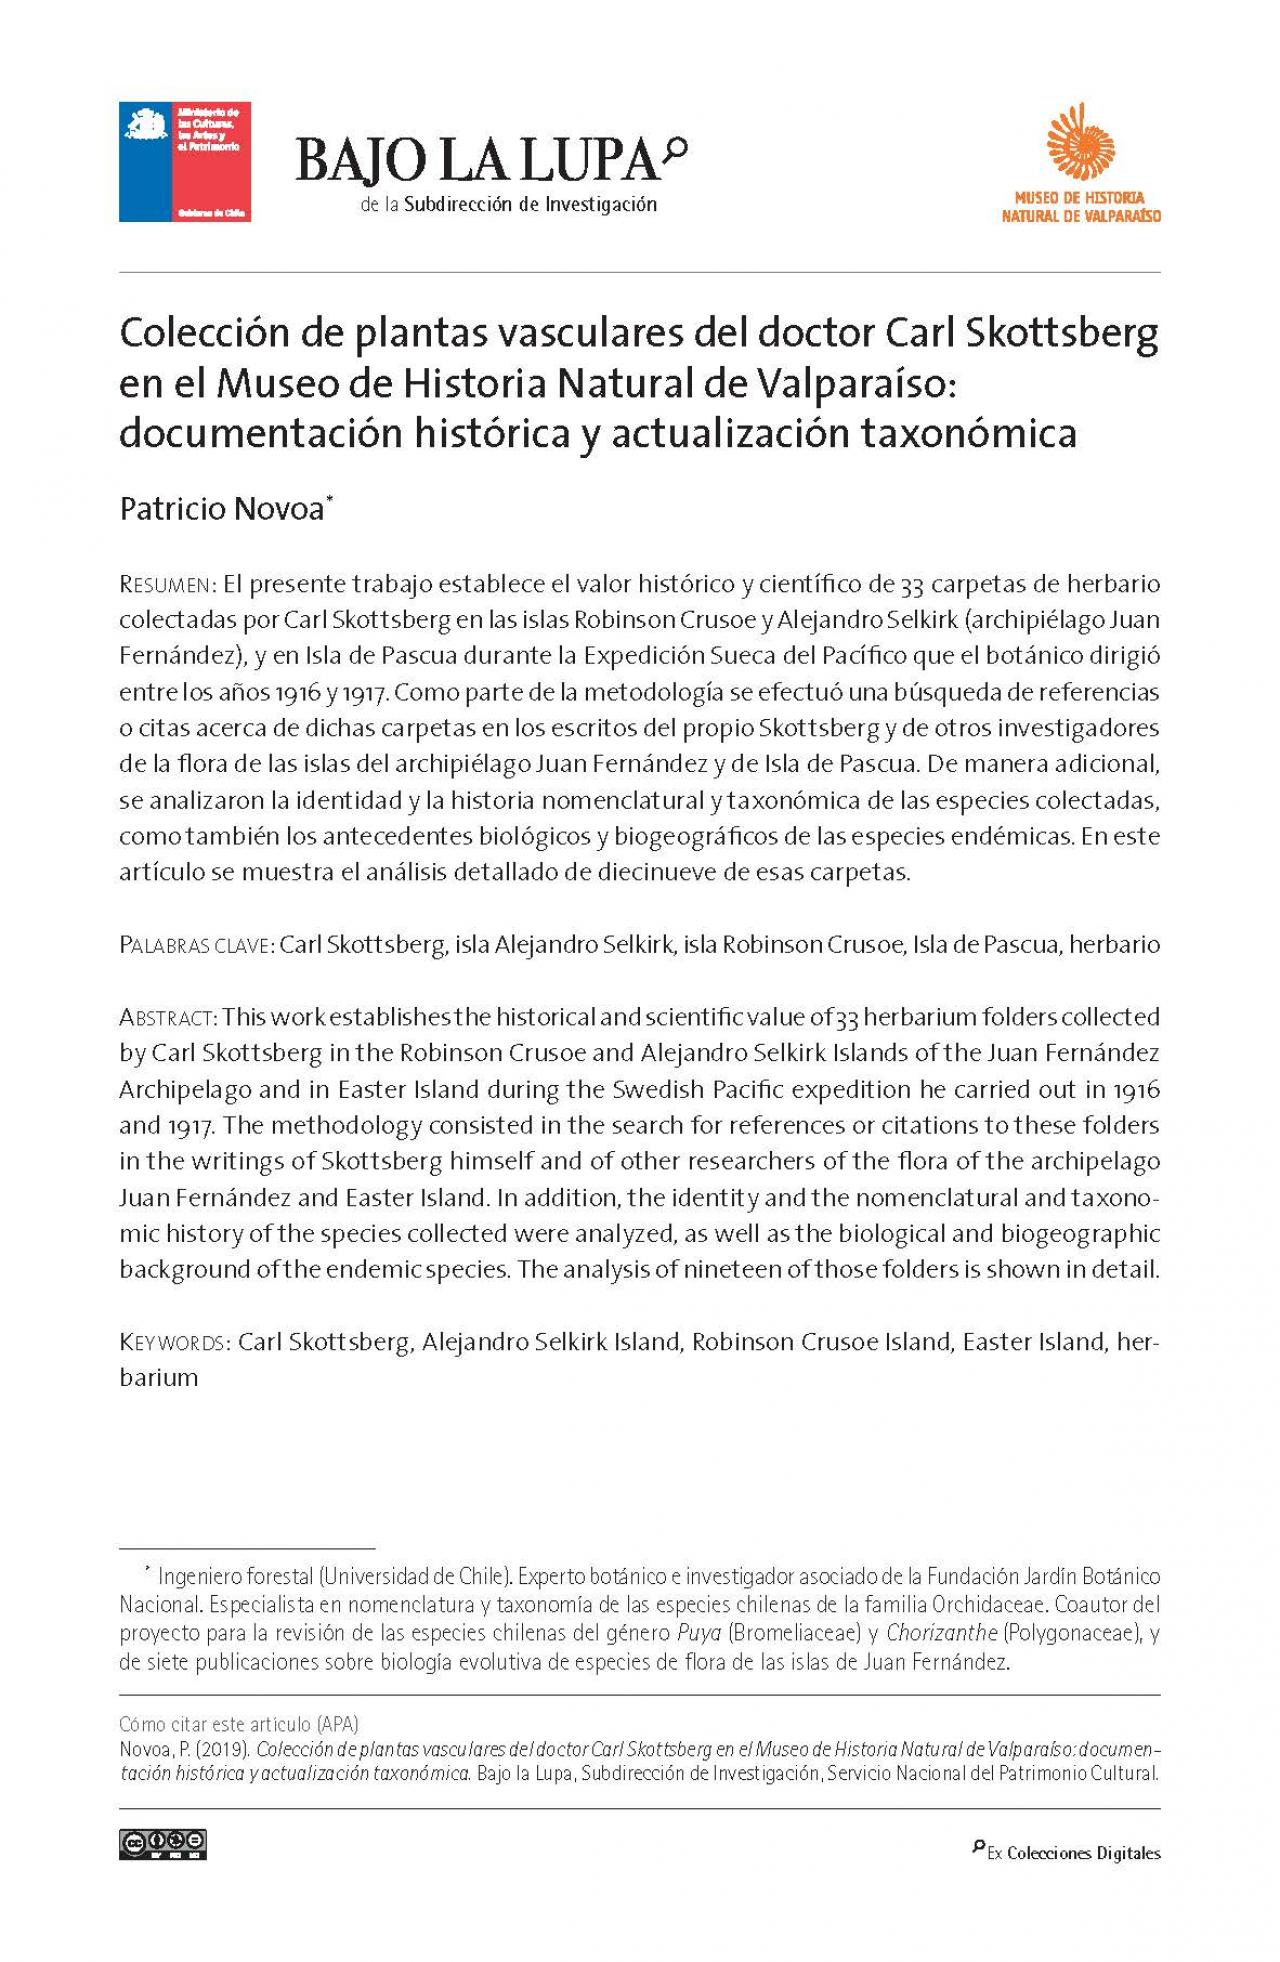 Colección de plantas vasculares del doctor Carl Skottsberg en el Museo de Historia Natural de Valparaíso